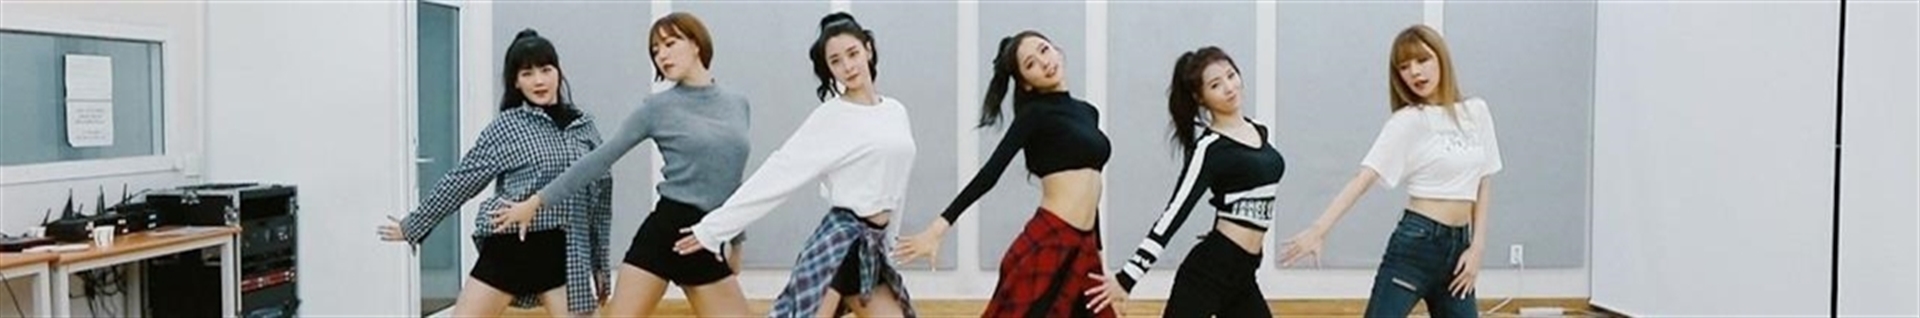 kpop.dance.tutorial